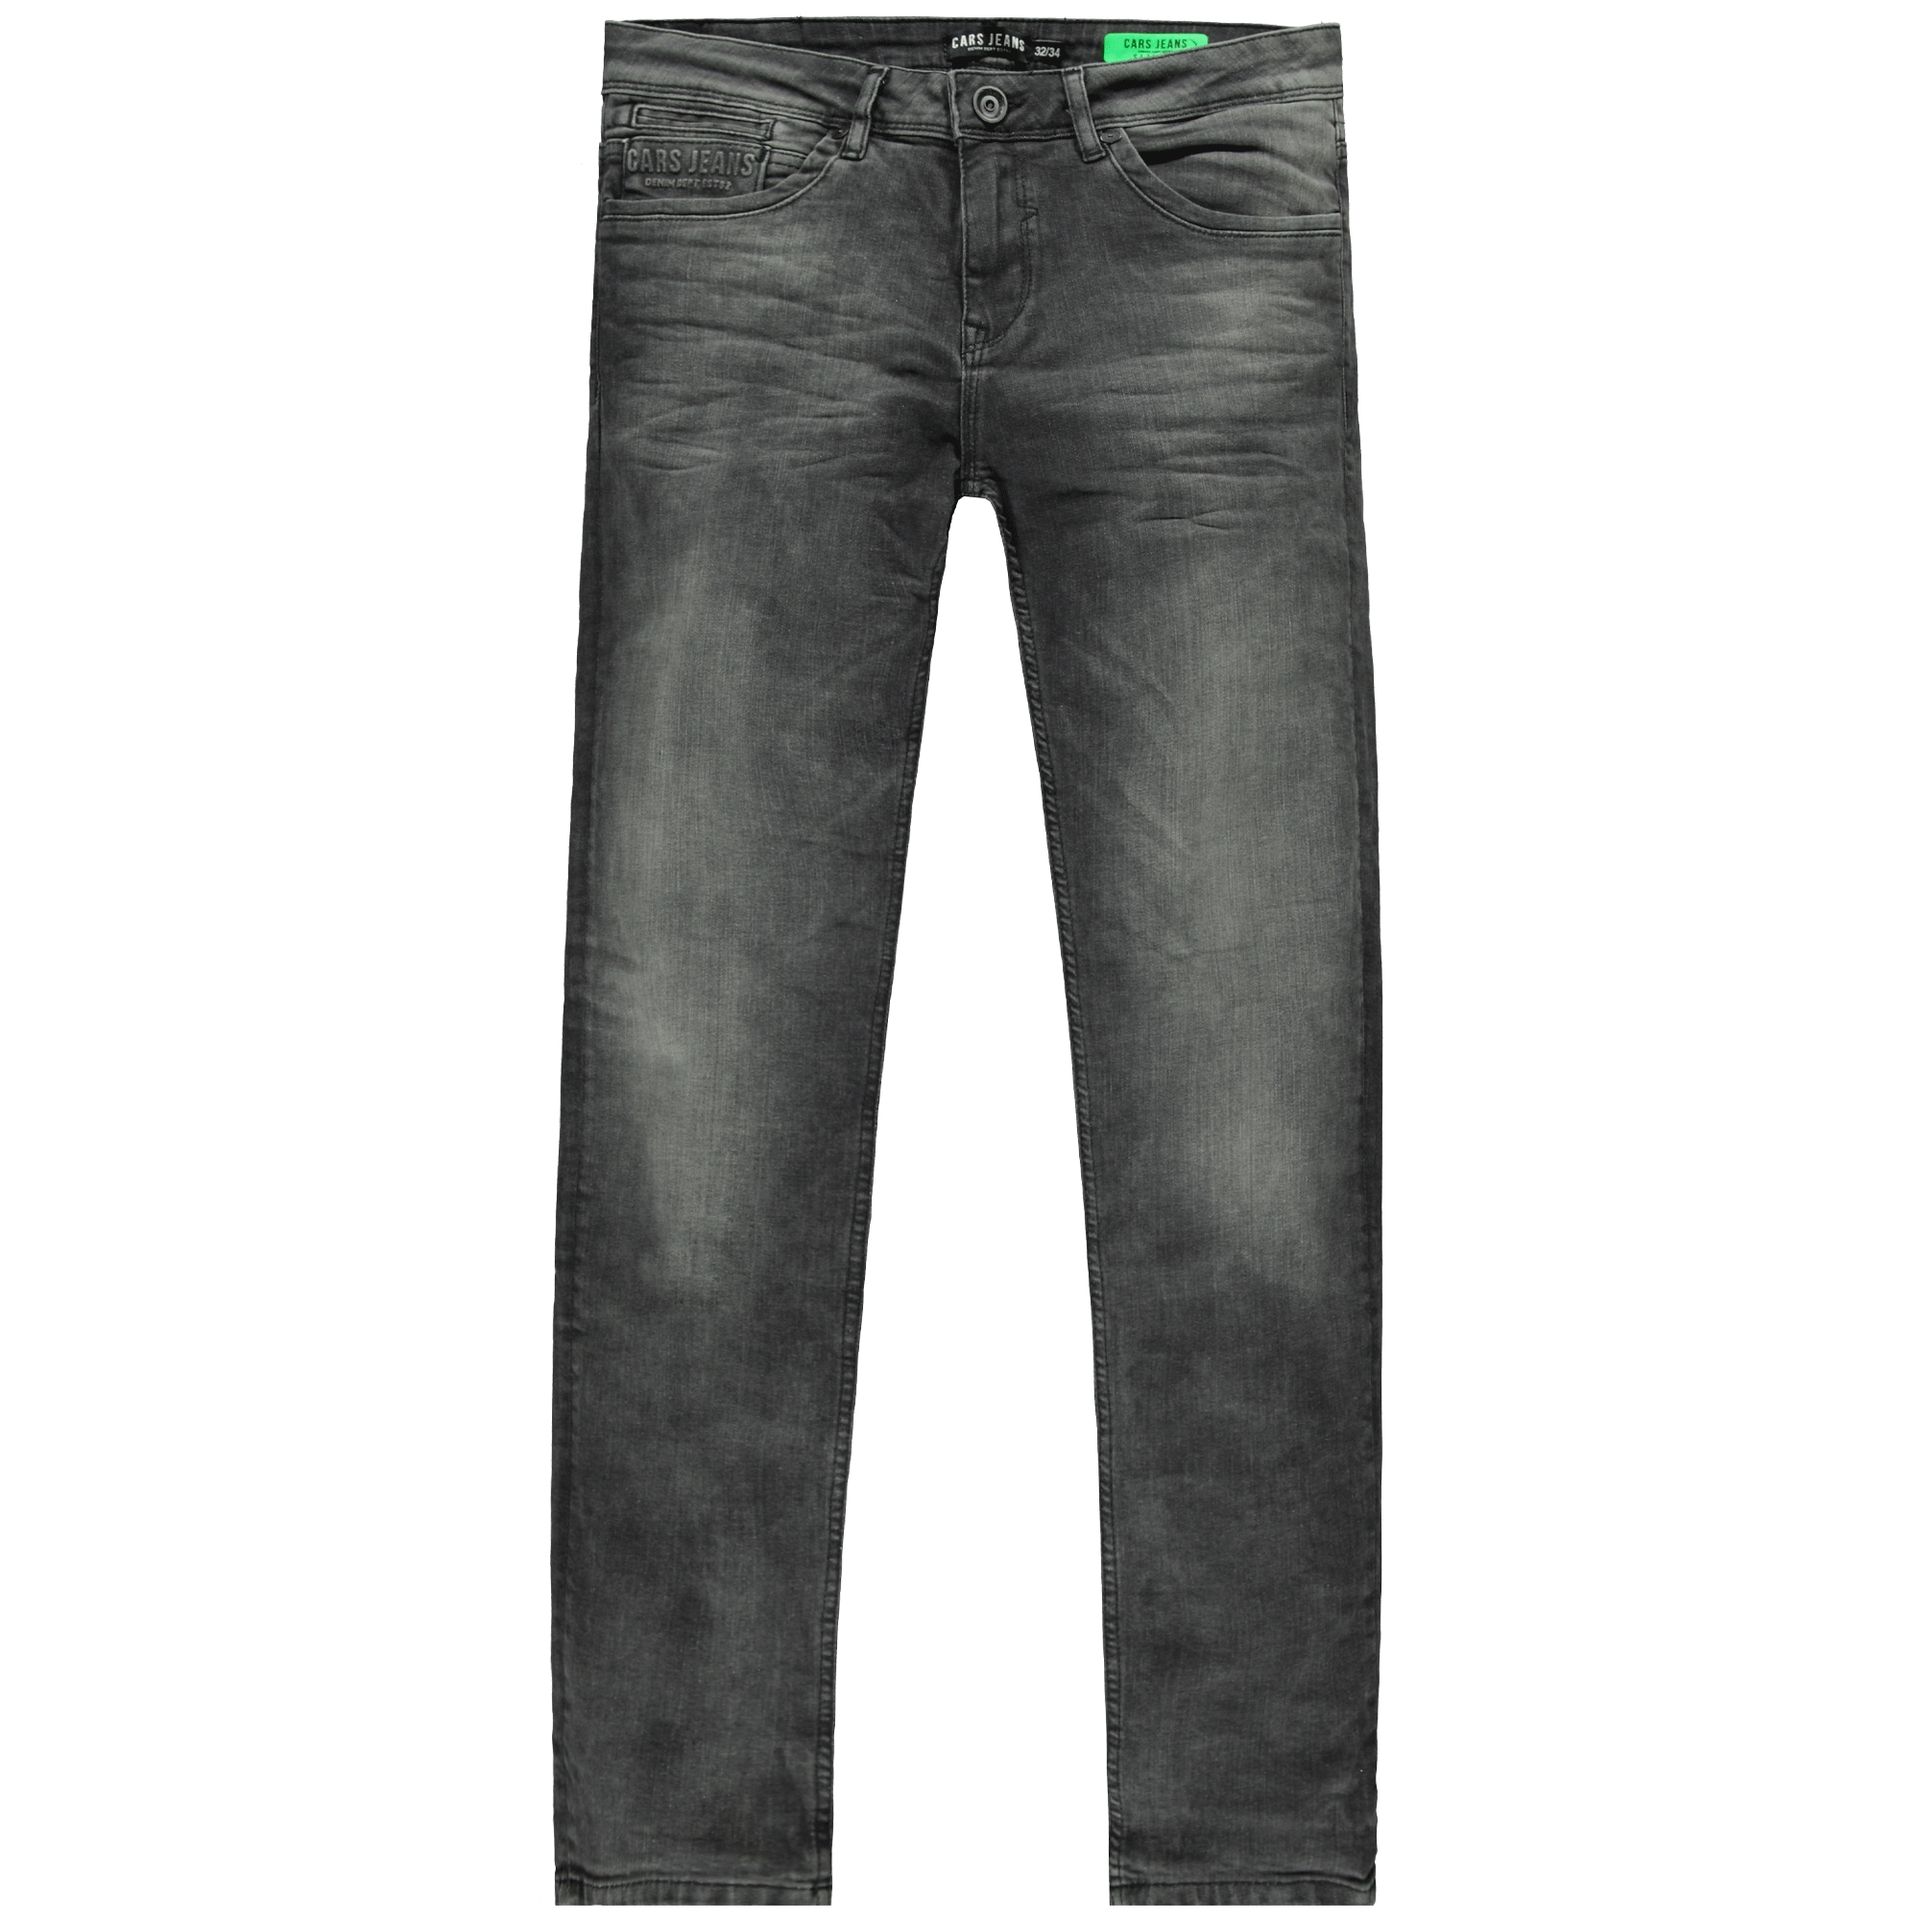 Cars jeans Jeans Blast Slim Fit 41 black used 00103194-EKA03000200000011